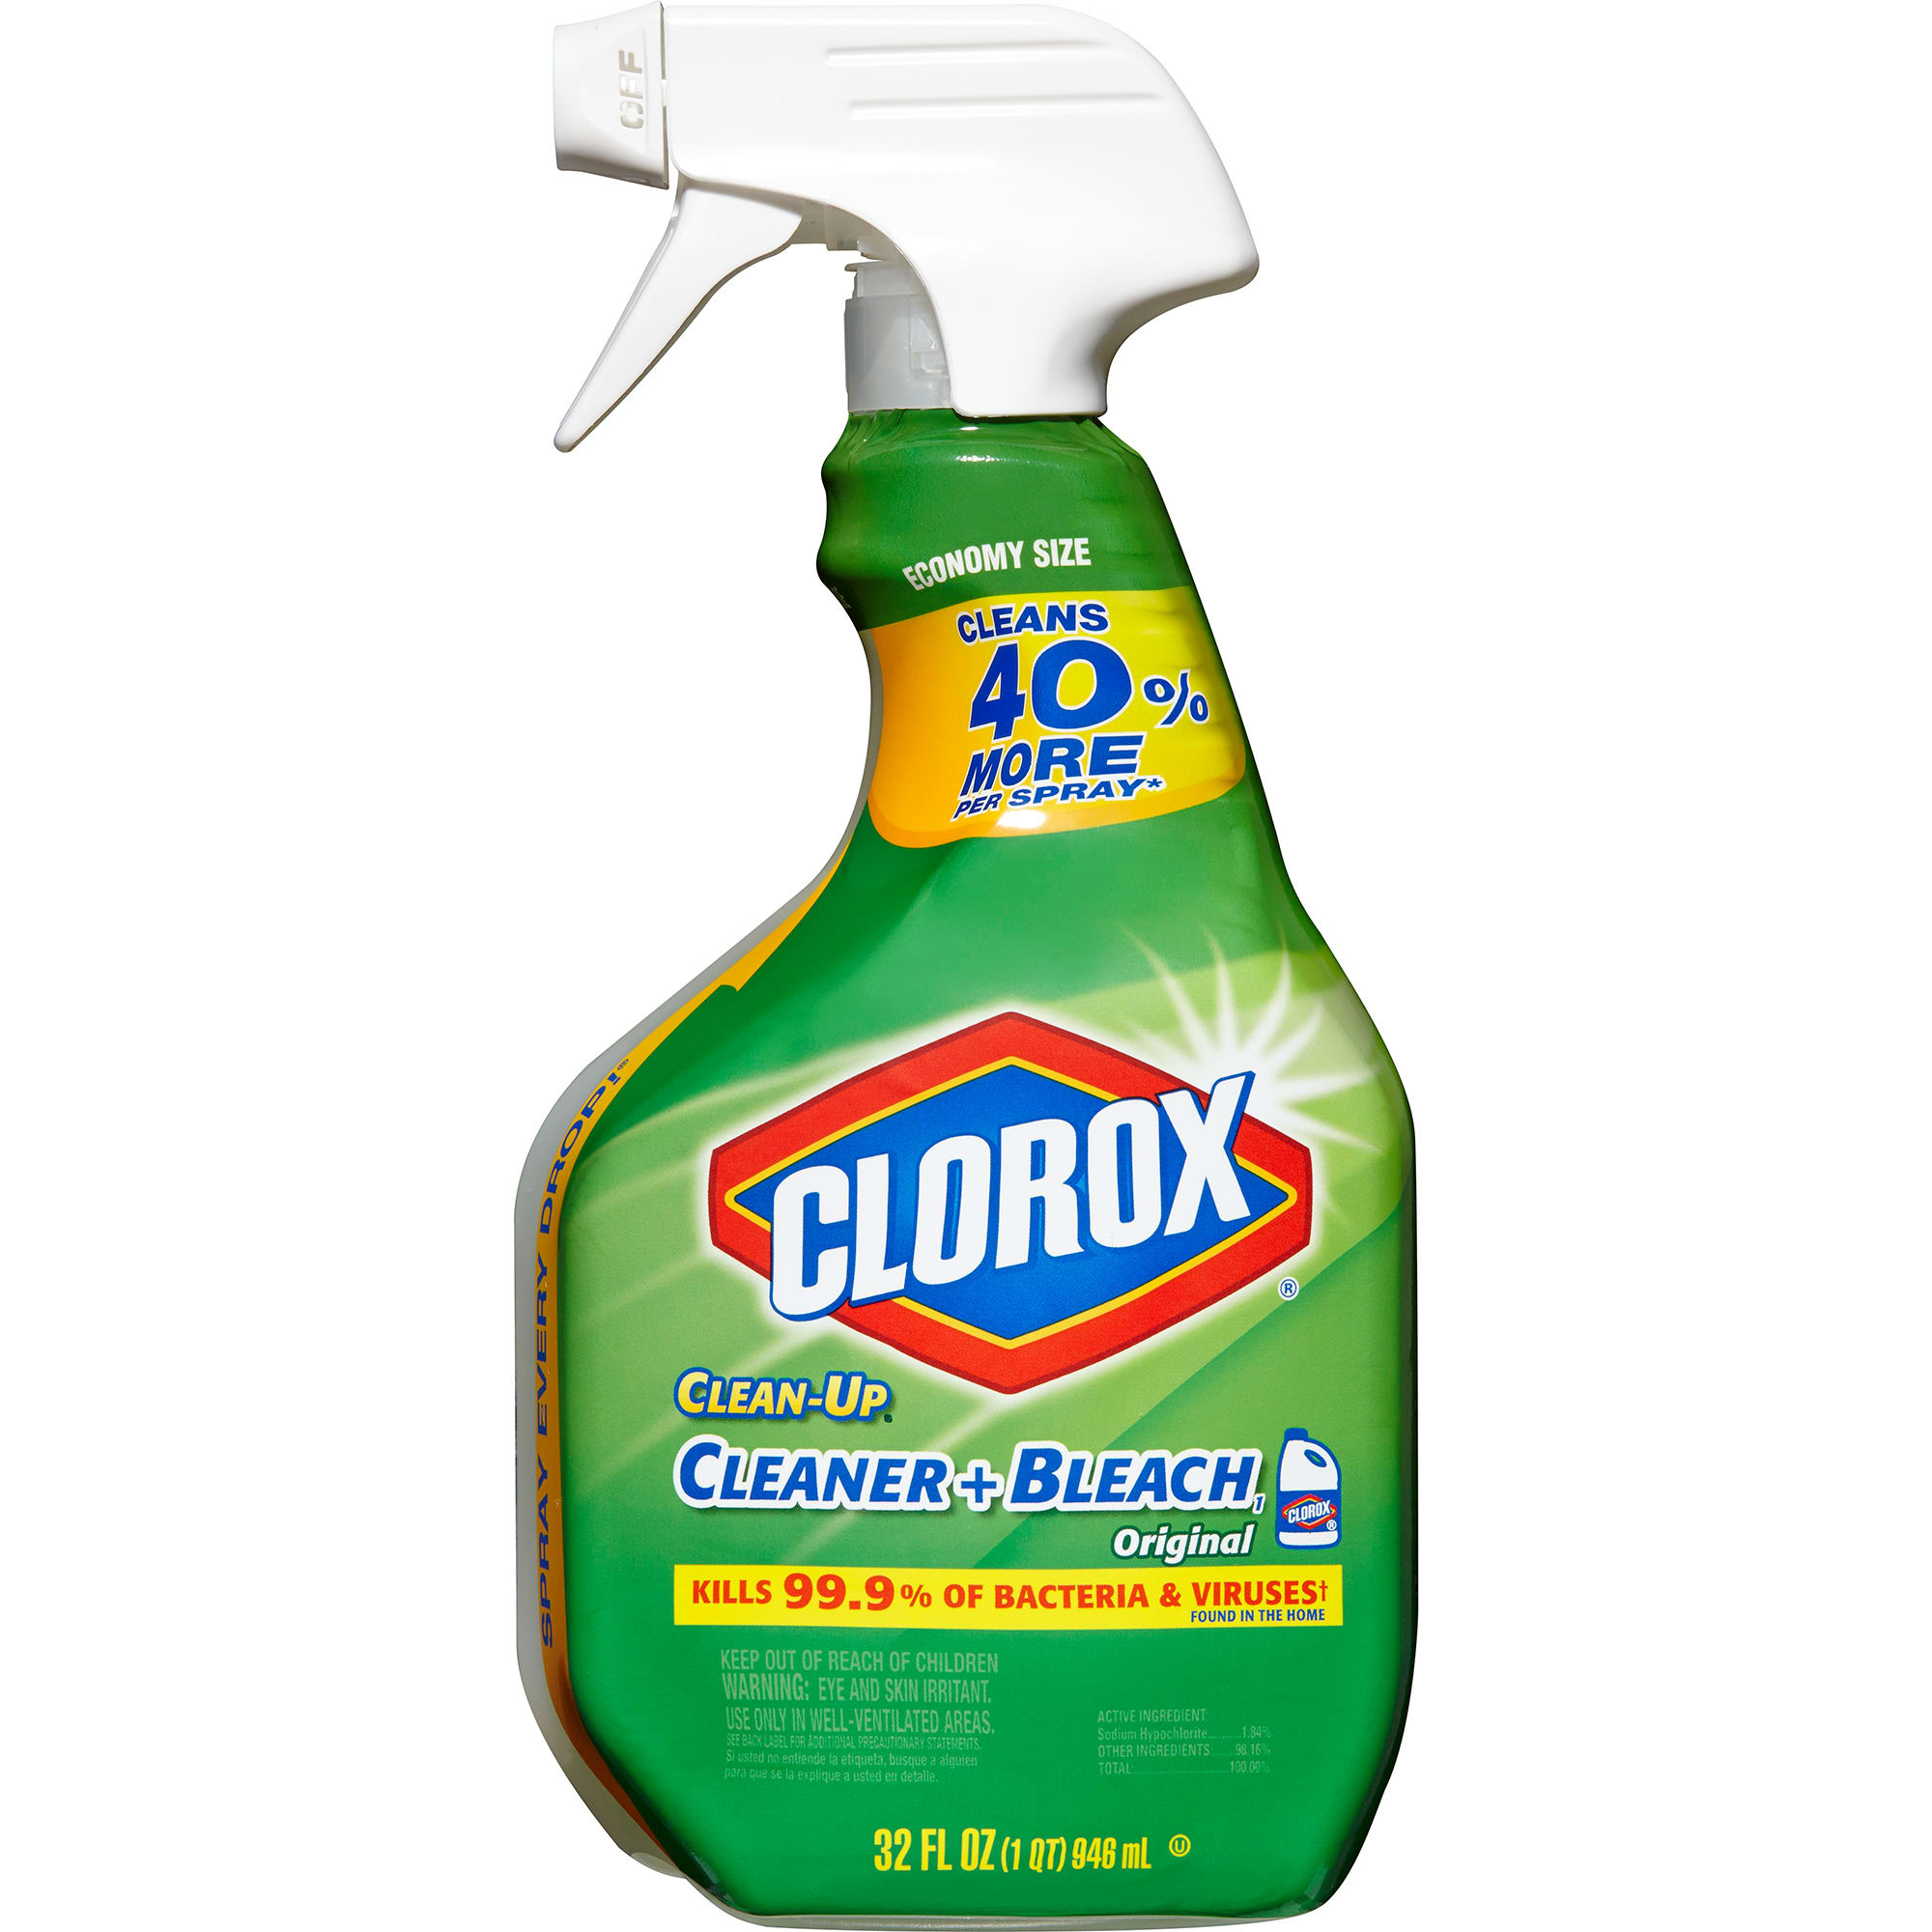 Clorox Auto Glass Cleaner - 22 fl oz spray